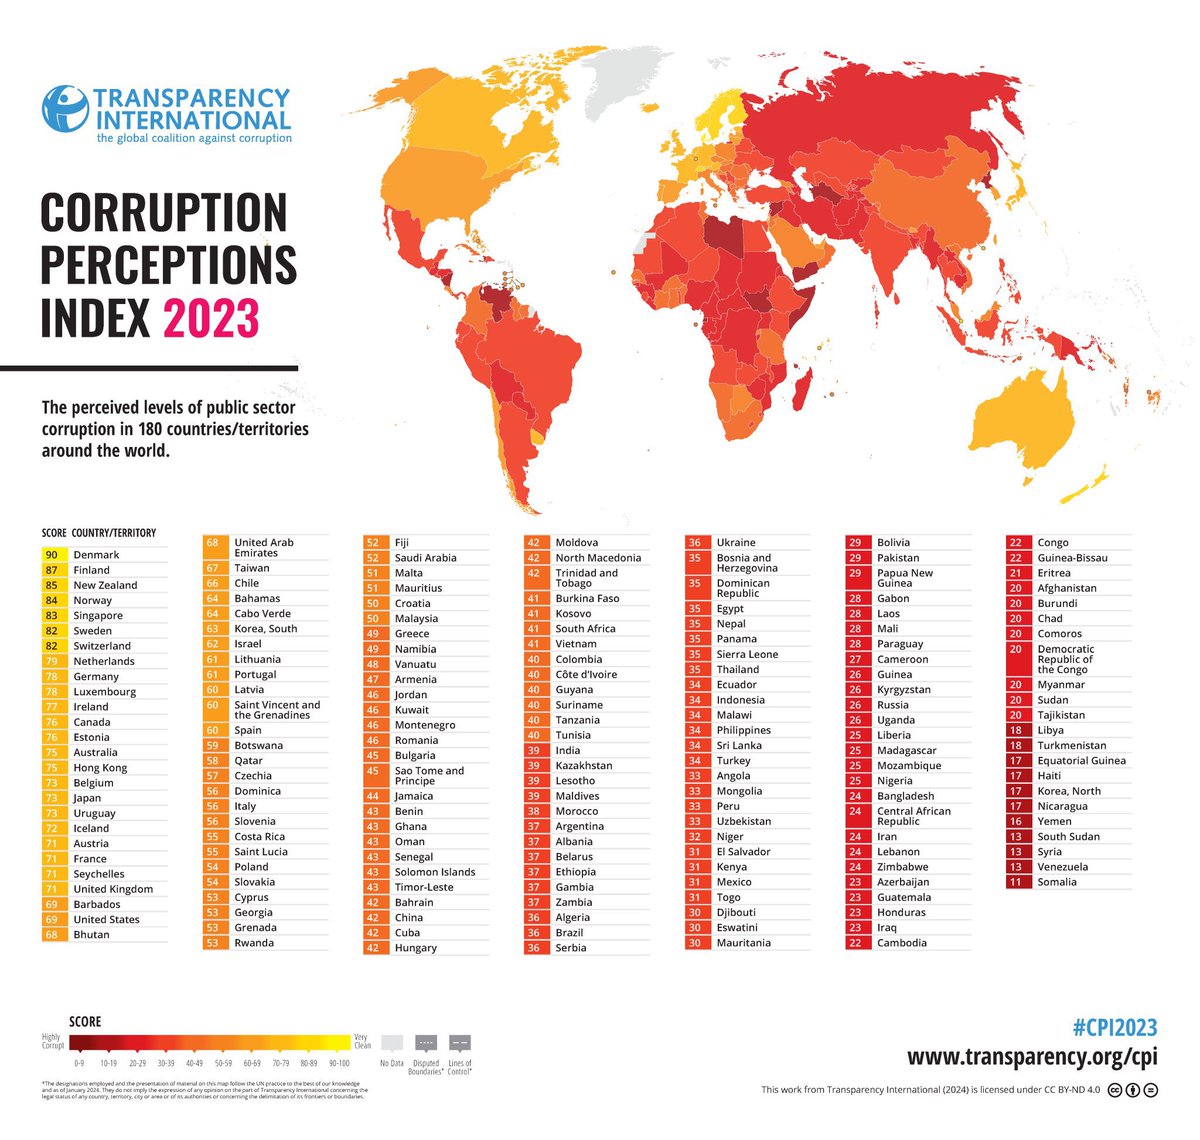 República Dominicana obtiene su mejor puntaje en los últimos 12 años de medición de @anticorruption.

Por tercer año consecutivo RD🇩🇴mejora en el Índice de Percepción de la Corrupción al obtener 35 puntos y colocarse en el nivel 108/180, avanzando 15 posiciones en el #CPI2023.